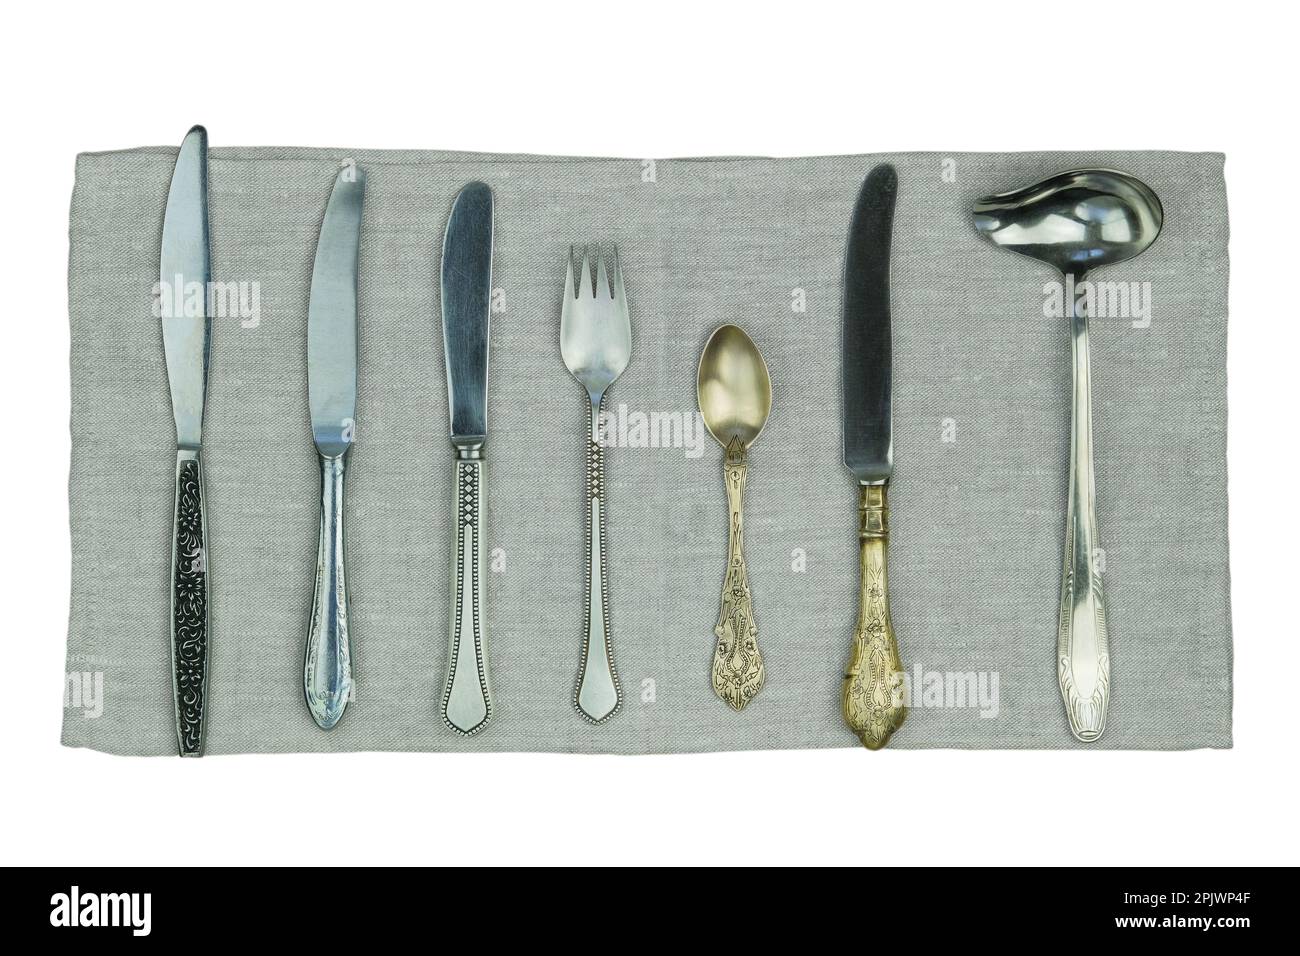 Variété de couteaux, fourchettes et autres ustensiles de cuisine sur une serviette en lin isolée sur un fond blanc. Vue de dessus. Banque D'Images